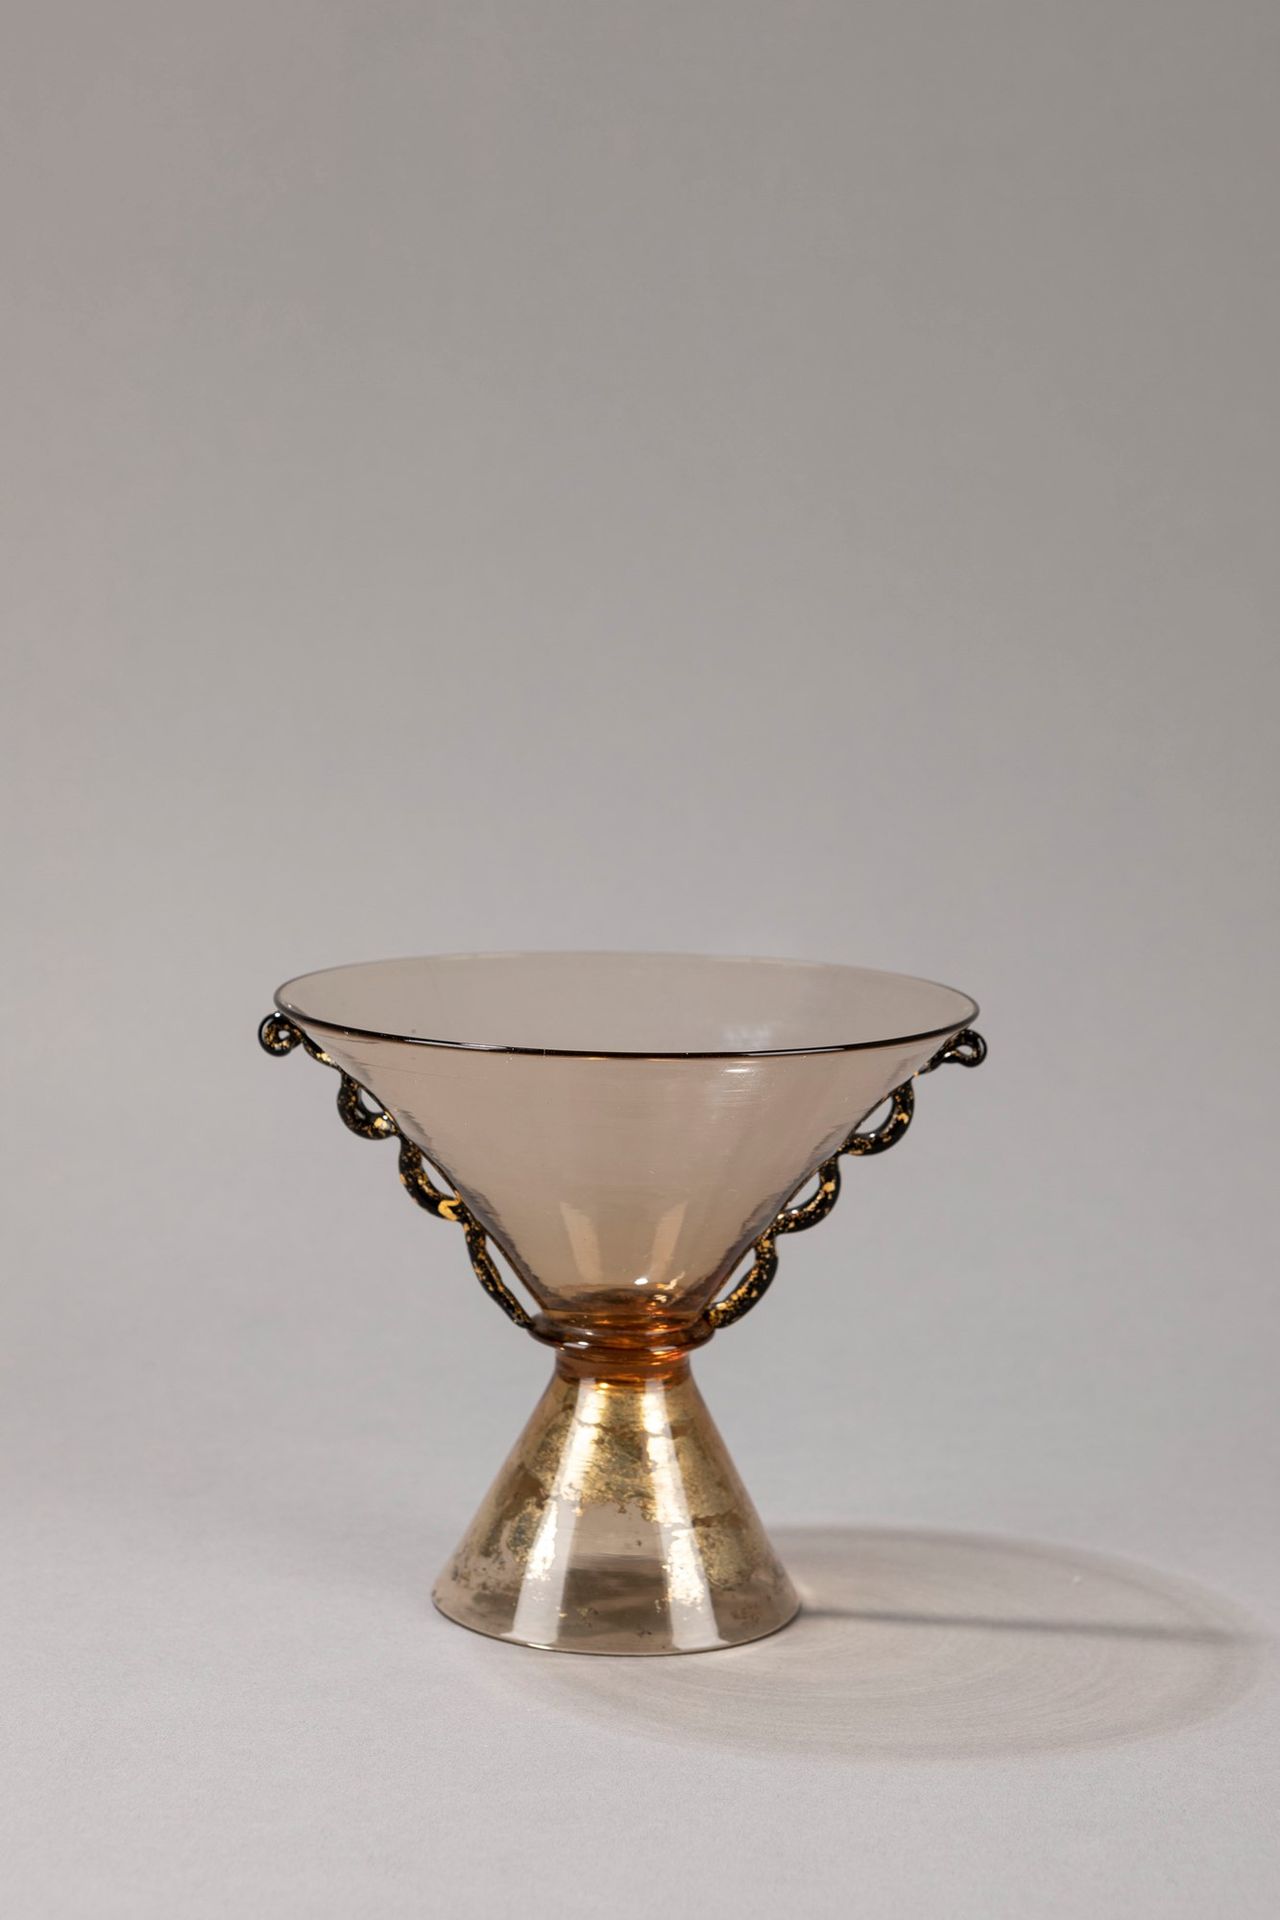 SALIR, Murano Vaso, 1930 circa

h 13 x diam 14 cm
vetro soffiato, base a specchi&hellip;